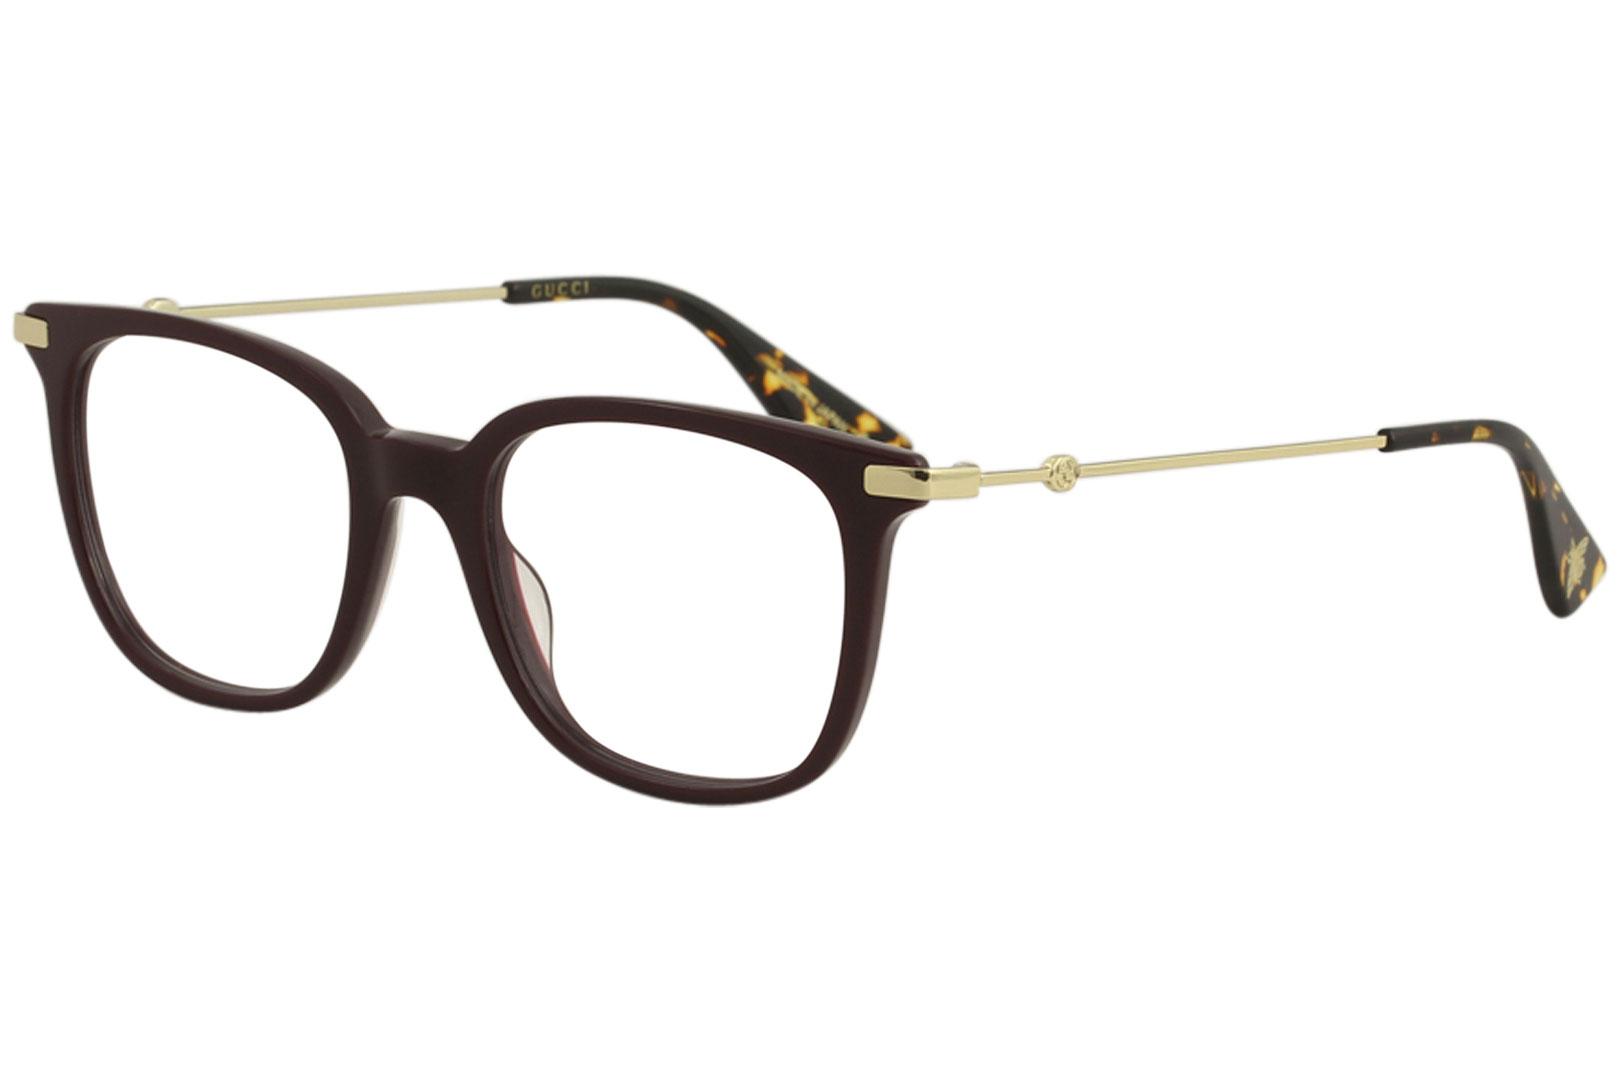 Gucci Women's Eyeglasses GG0110O GG/0110/O Full Rim Optical Frame - Burgundy/Gold   006 - Lens 49 Bridge 19 Temple 145mm